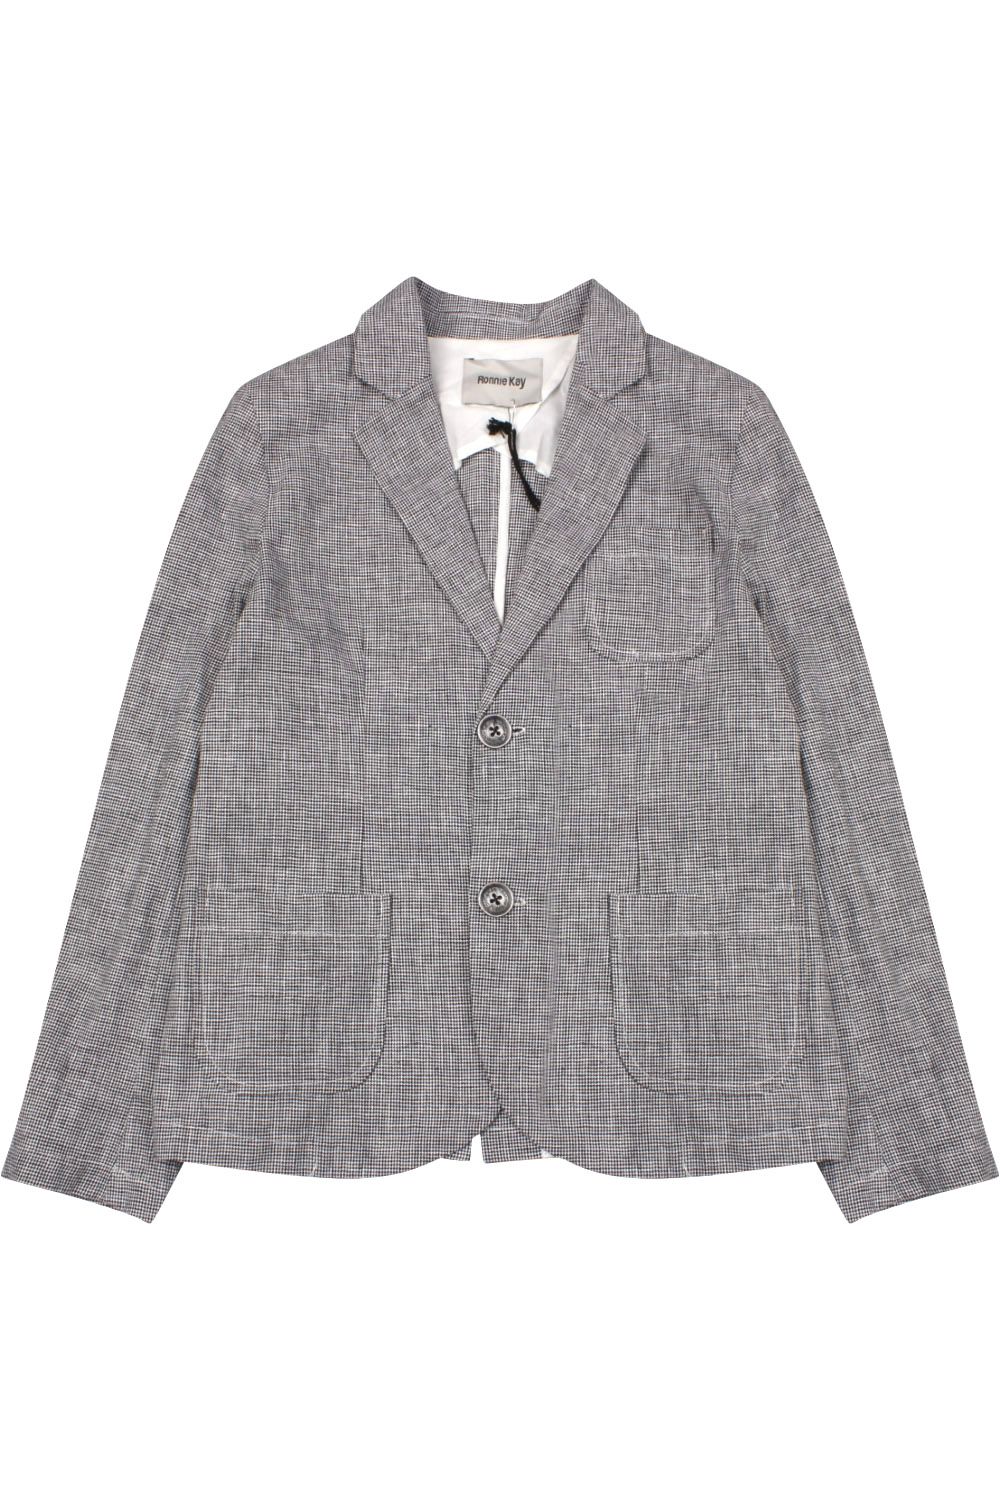 Пиджак Ronnie Kay, размер 128, цвет серый - фото 1